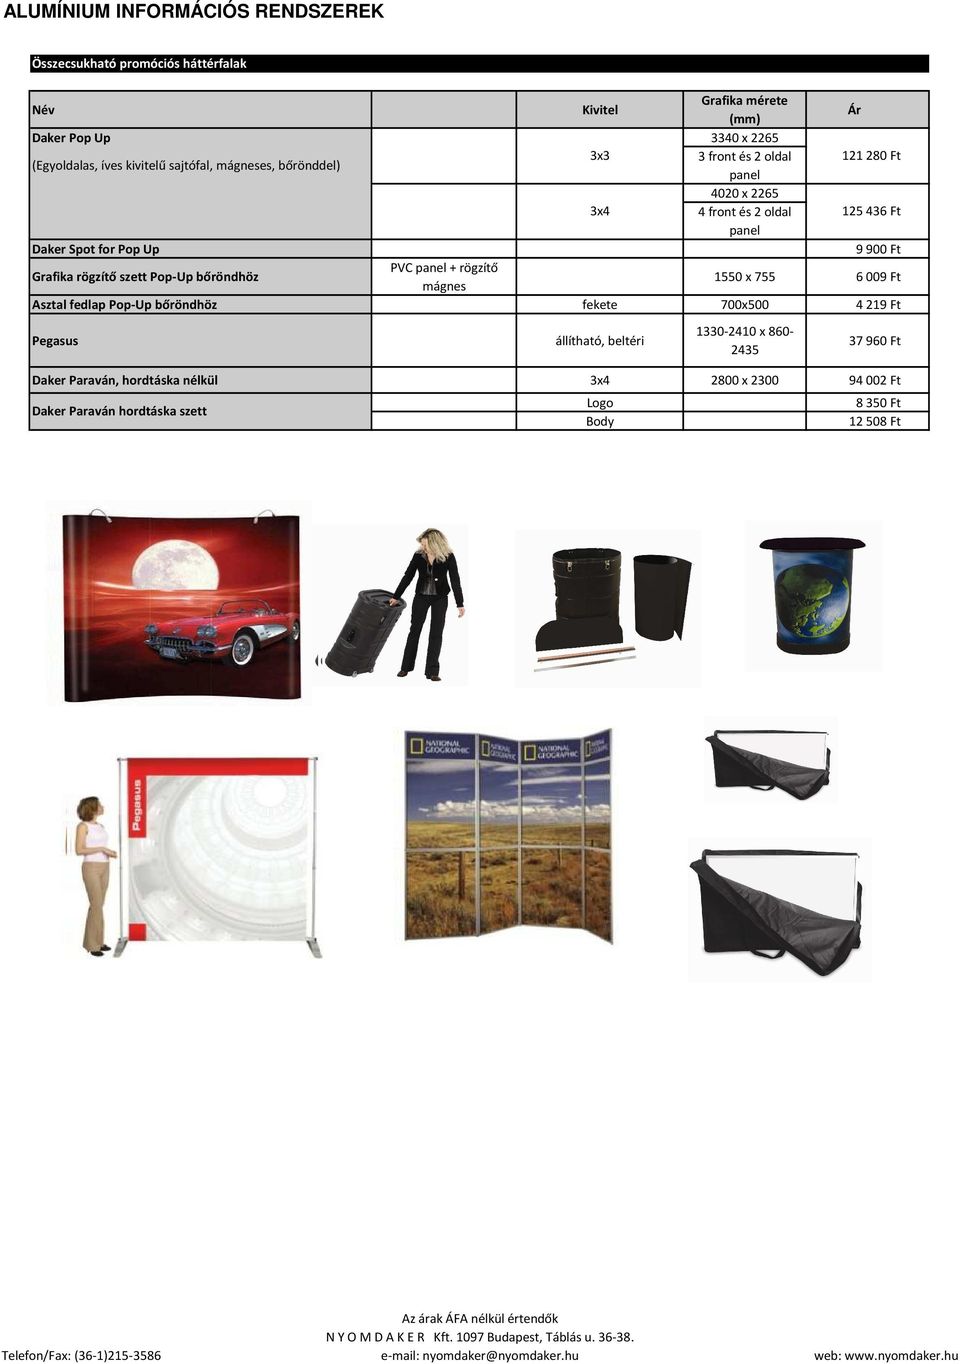 rögzítő szett Pop-Up bőröndhöz PVC panel + rögzítő mágnes 1550 x 755 6009 Ft Asztal fedlap Pop-Up bőröndhöz fekete 700x500 4219 Ft Pegasus